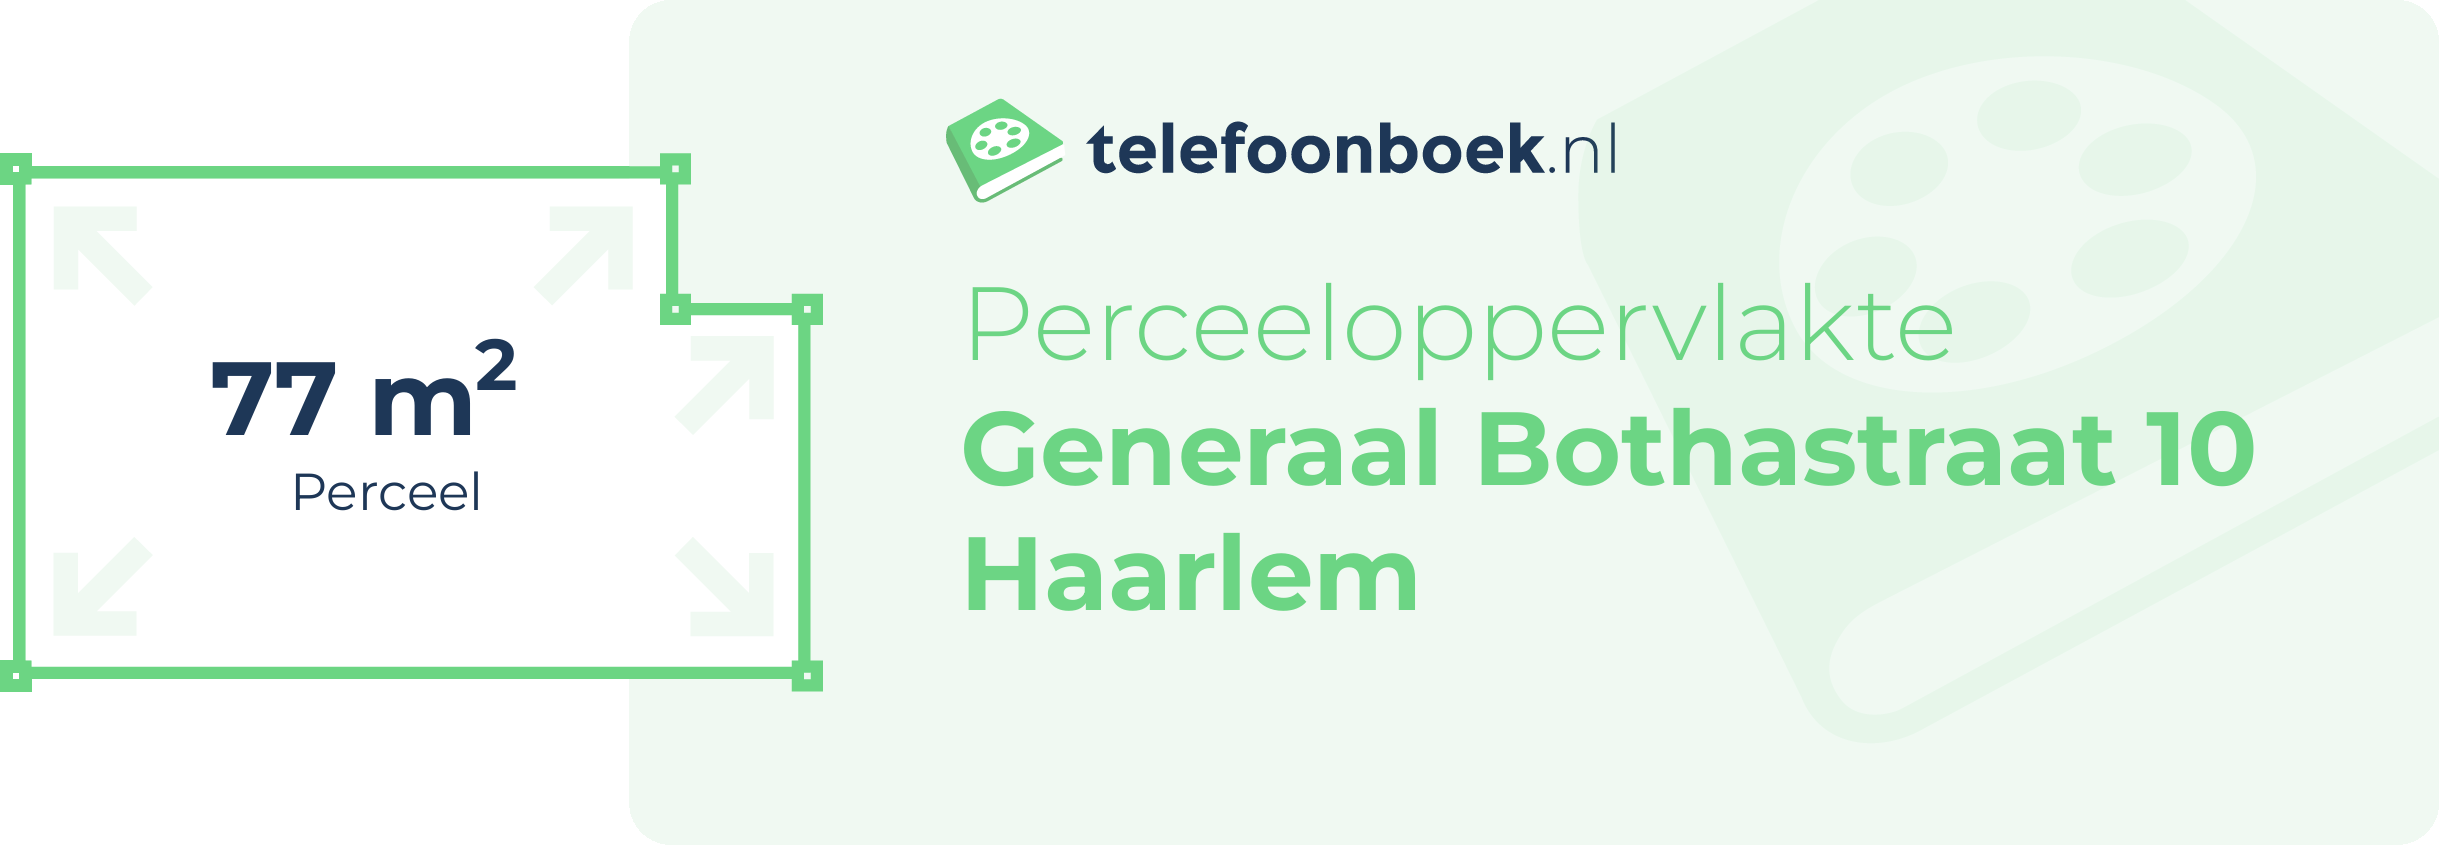 Perceeloppervlakte Generaal Bothastraat 10 Haarlem